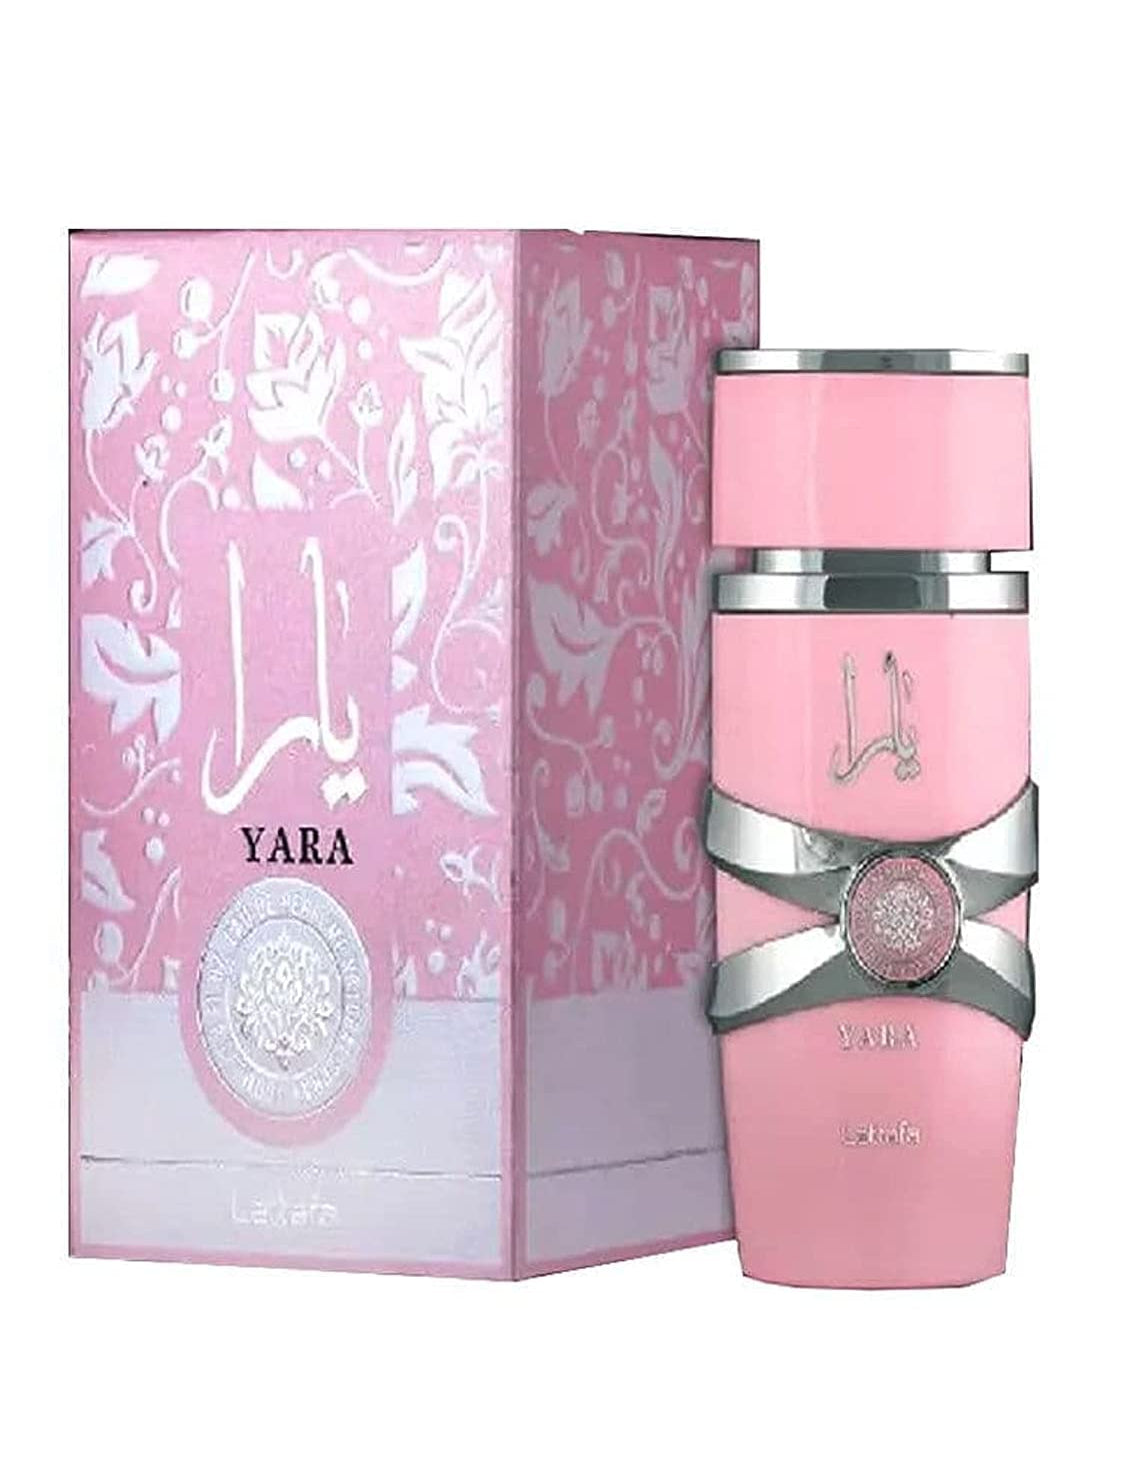 Yara EDP (100ml) perfume spray by Lattafa | Khan El Khalili